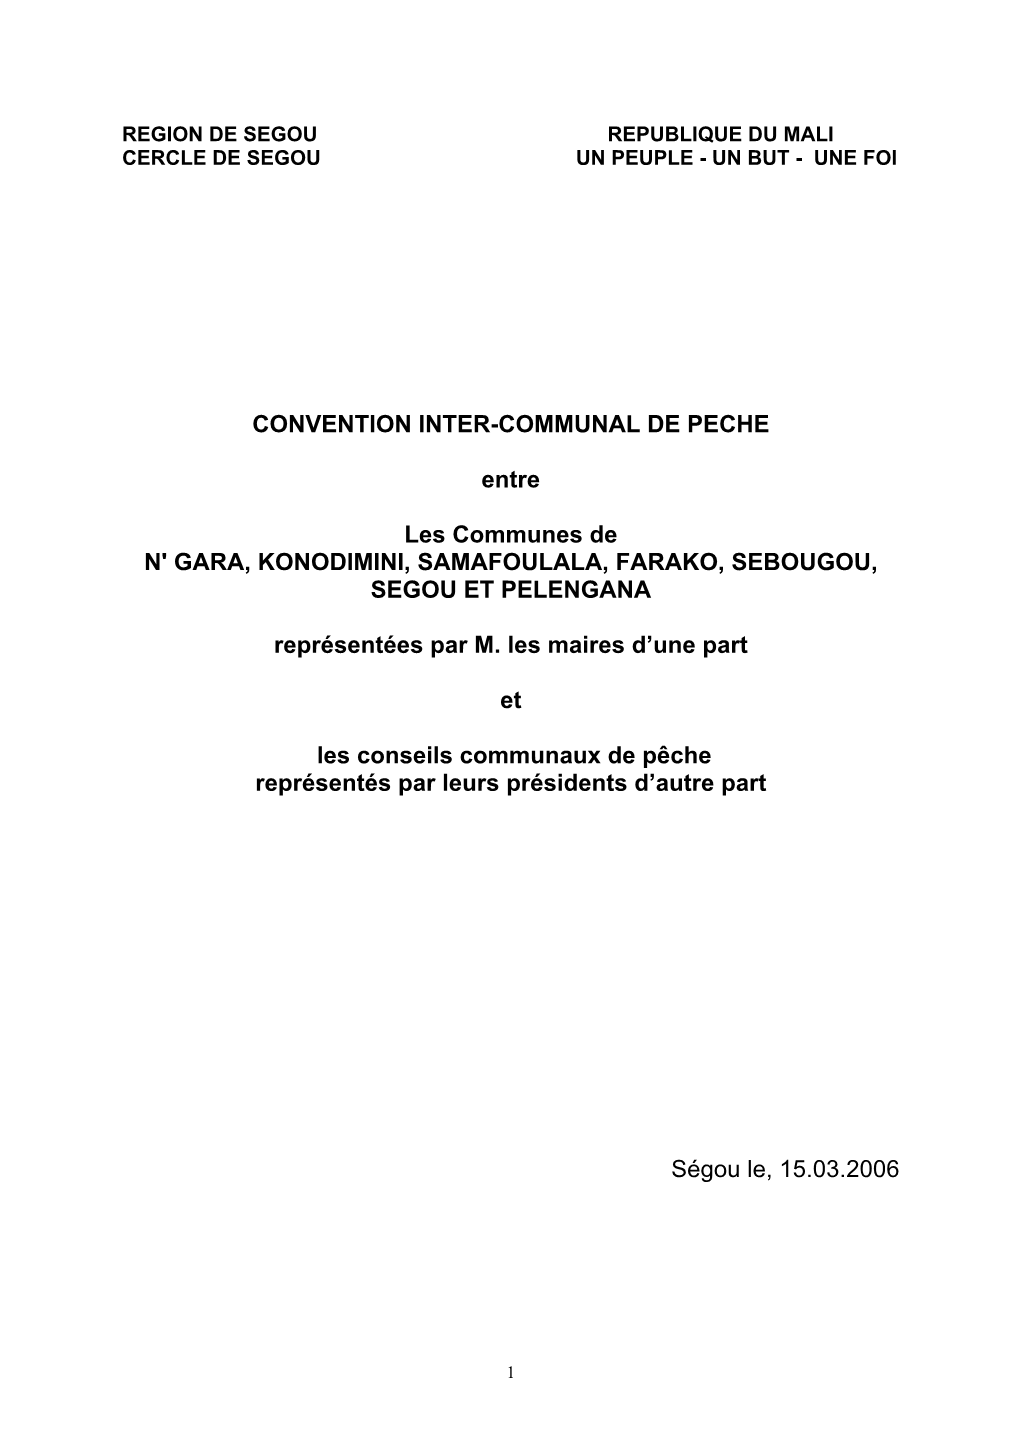 CONVENTION INTER-COMMUNAL DE PECHE Entre Les Communes